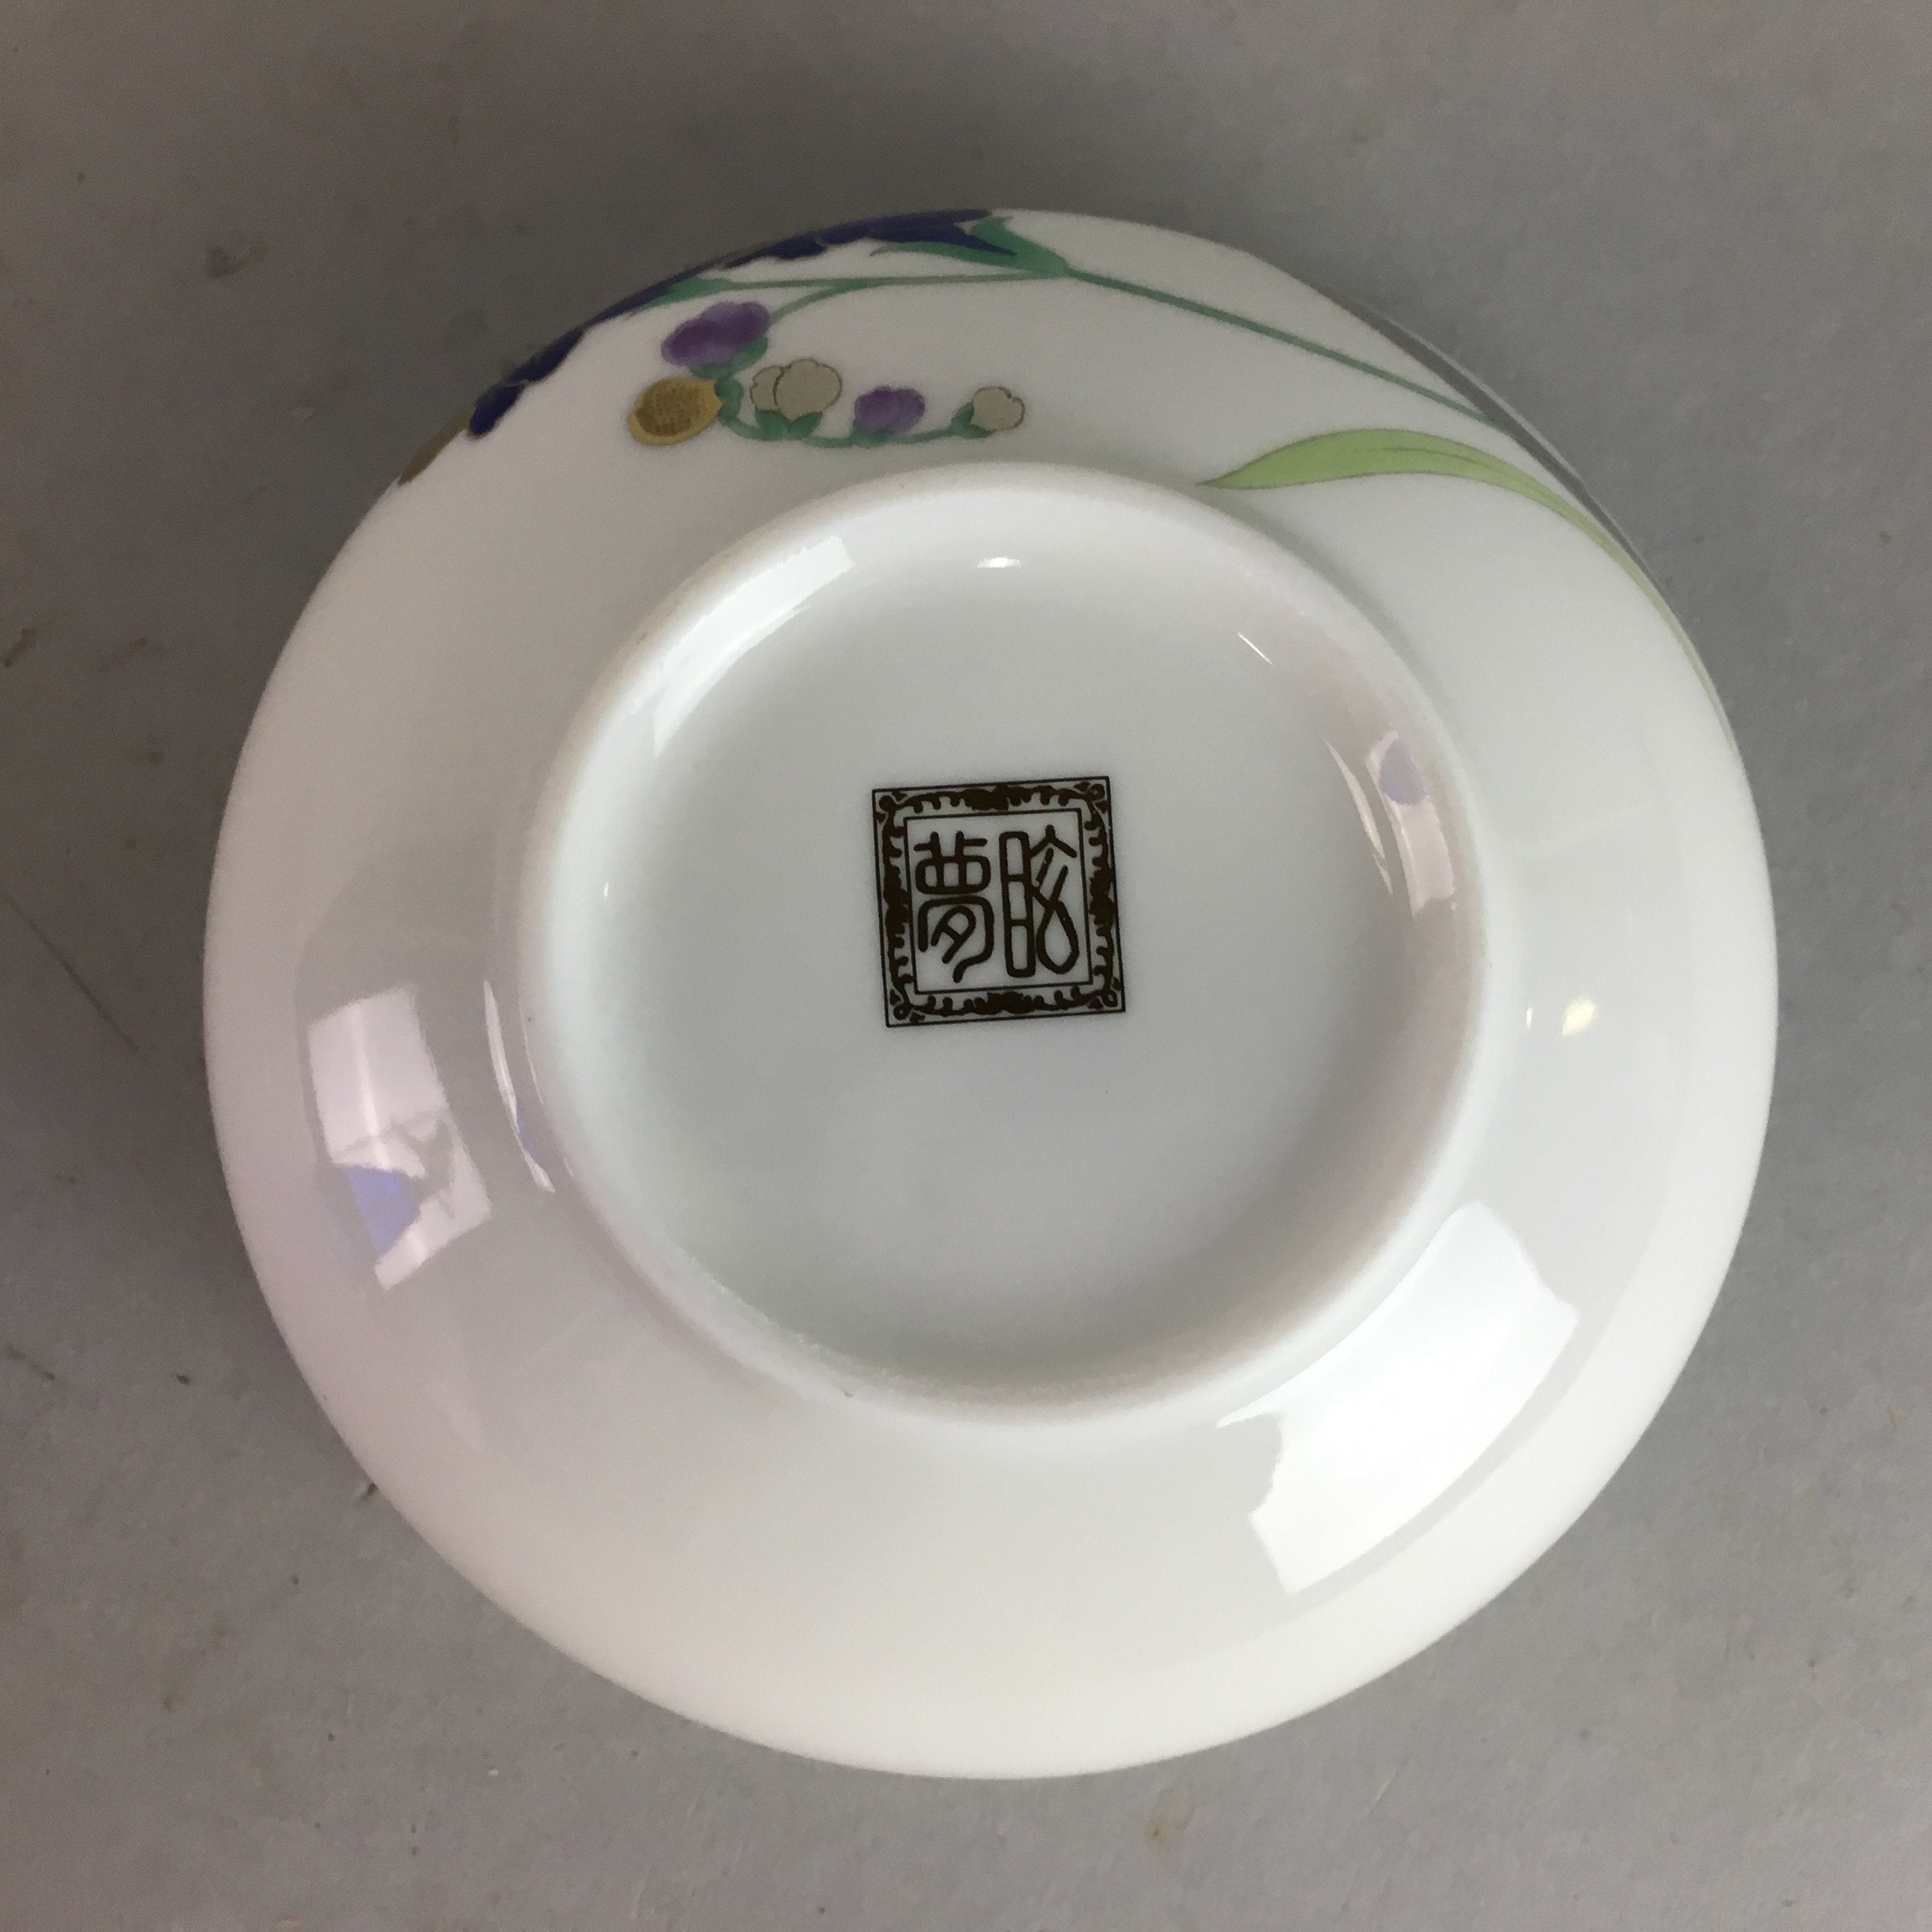 Japanese Small Bowl Vtg Porcelain Floral Design Signed QT58